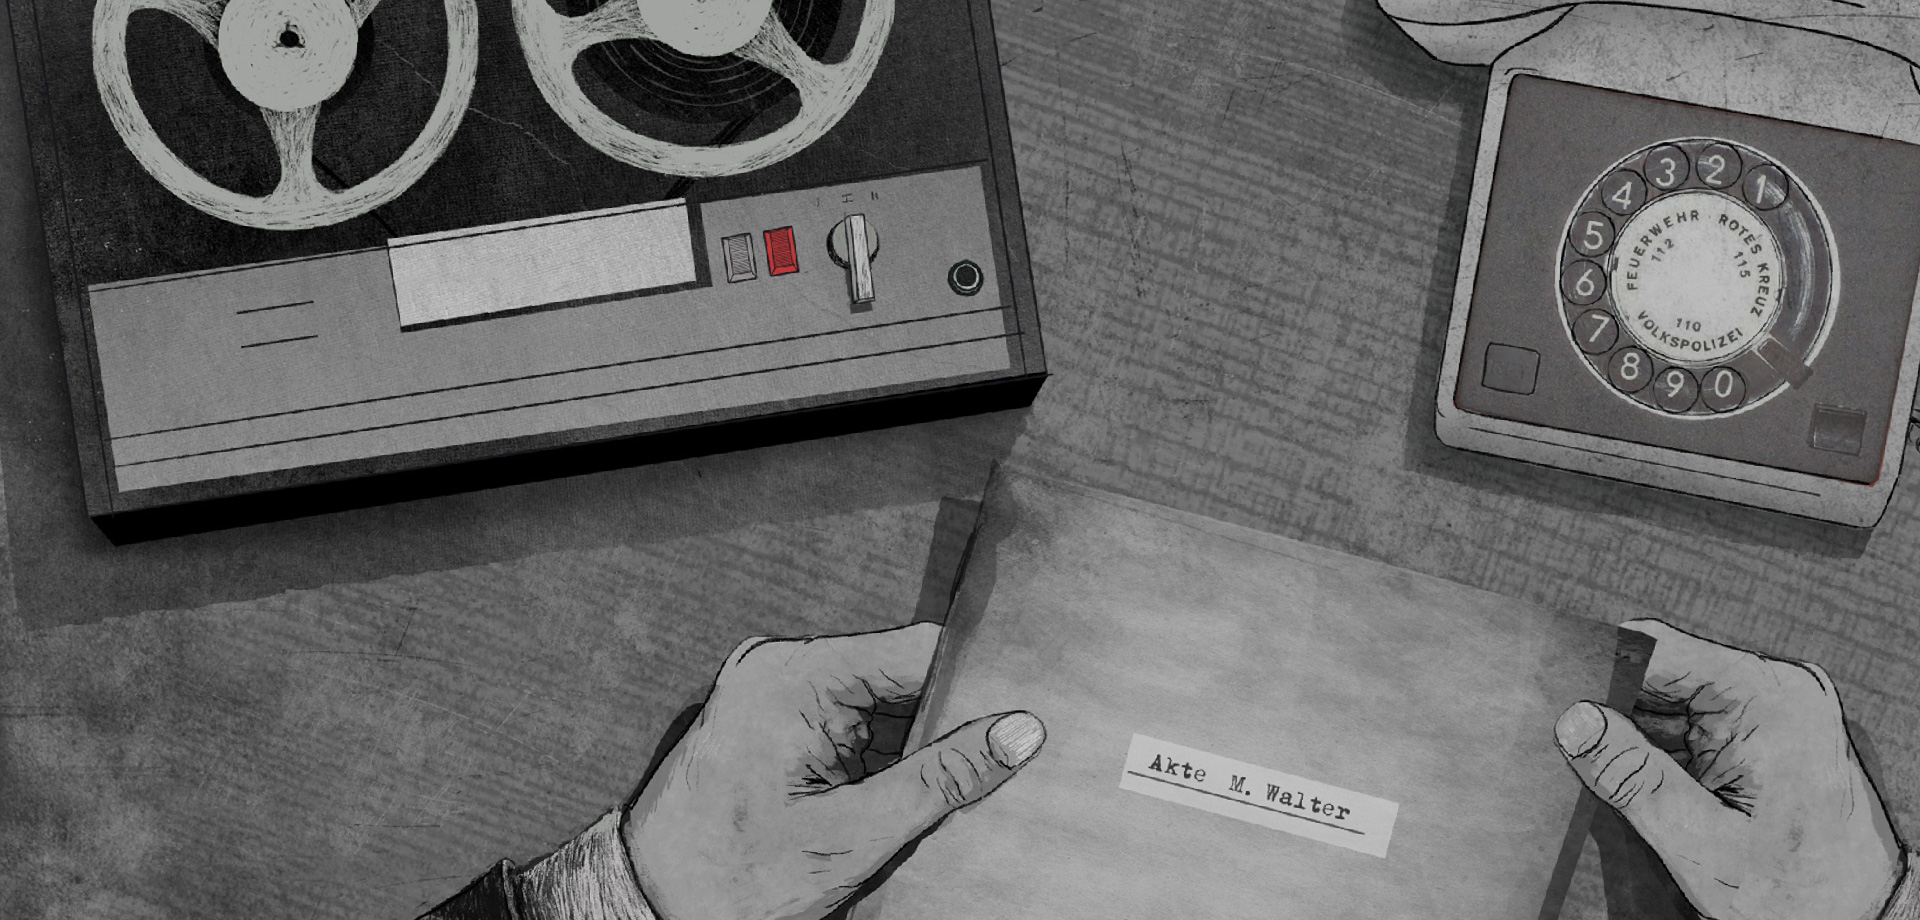 eine Zeichnung: darauf ist ein Tonbandgerät, ein Telefon mit Wälscheibe und zwei Hände, die ein Papier halten, darauf steht "Akte M. Walter"